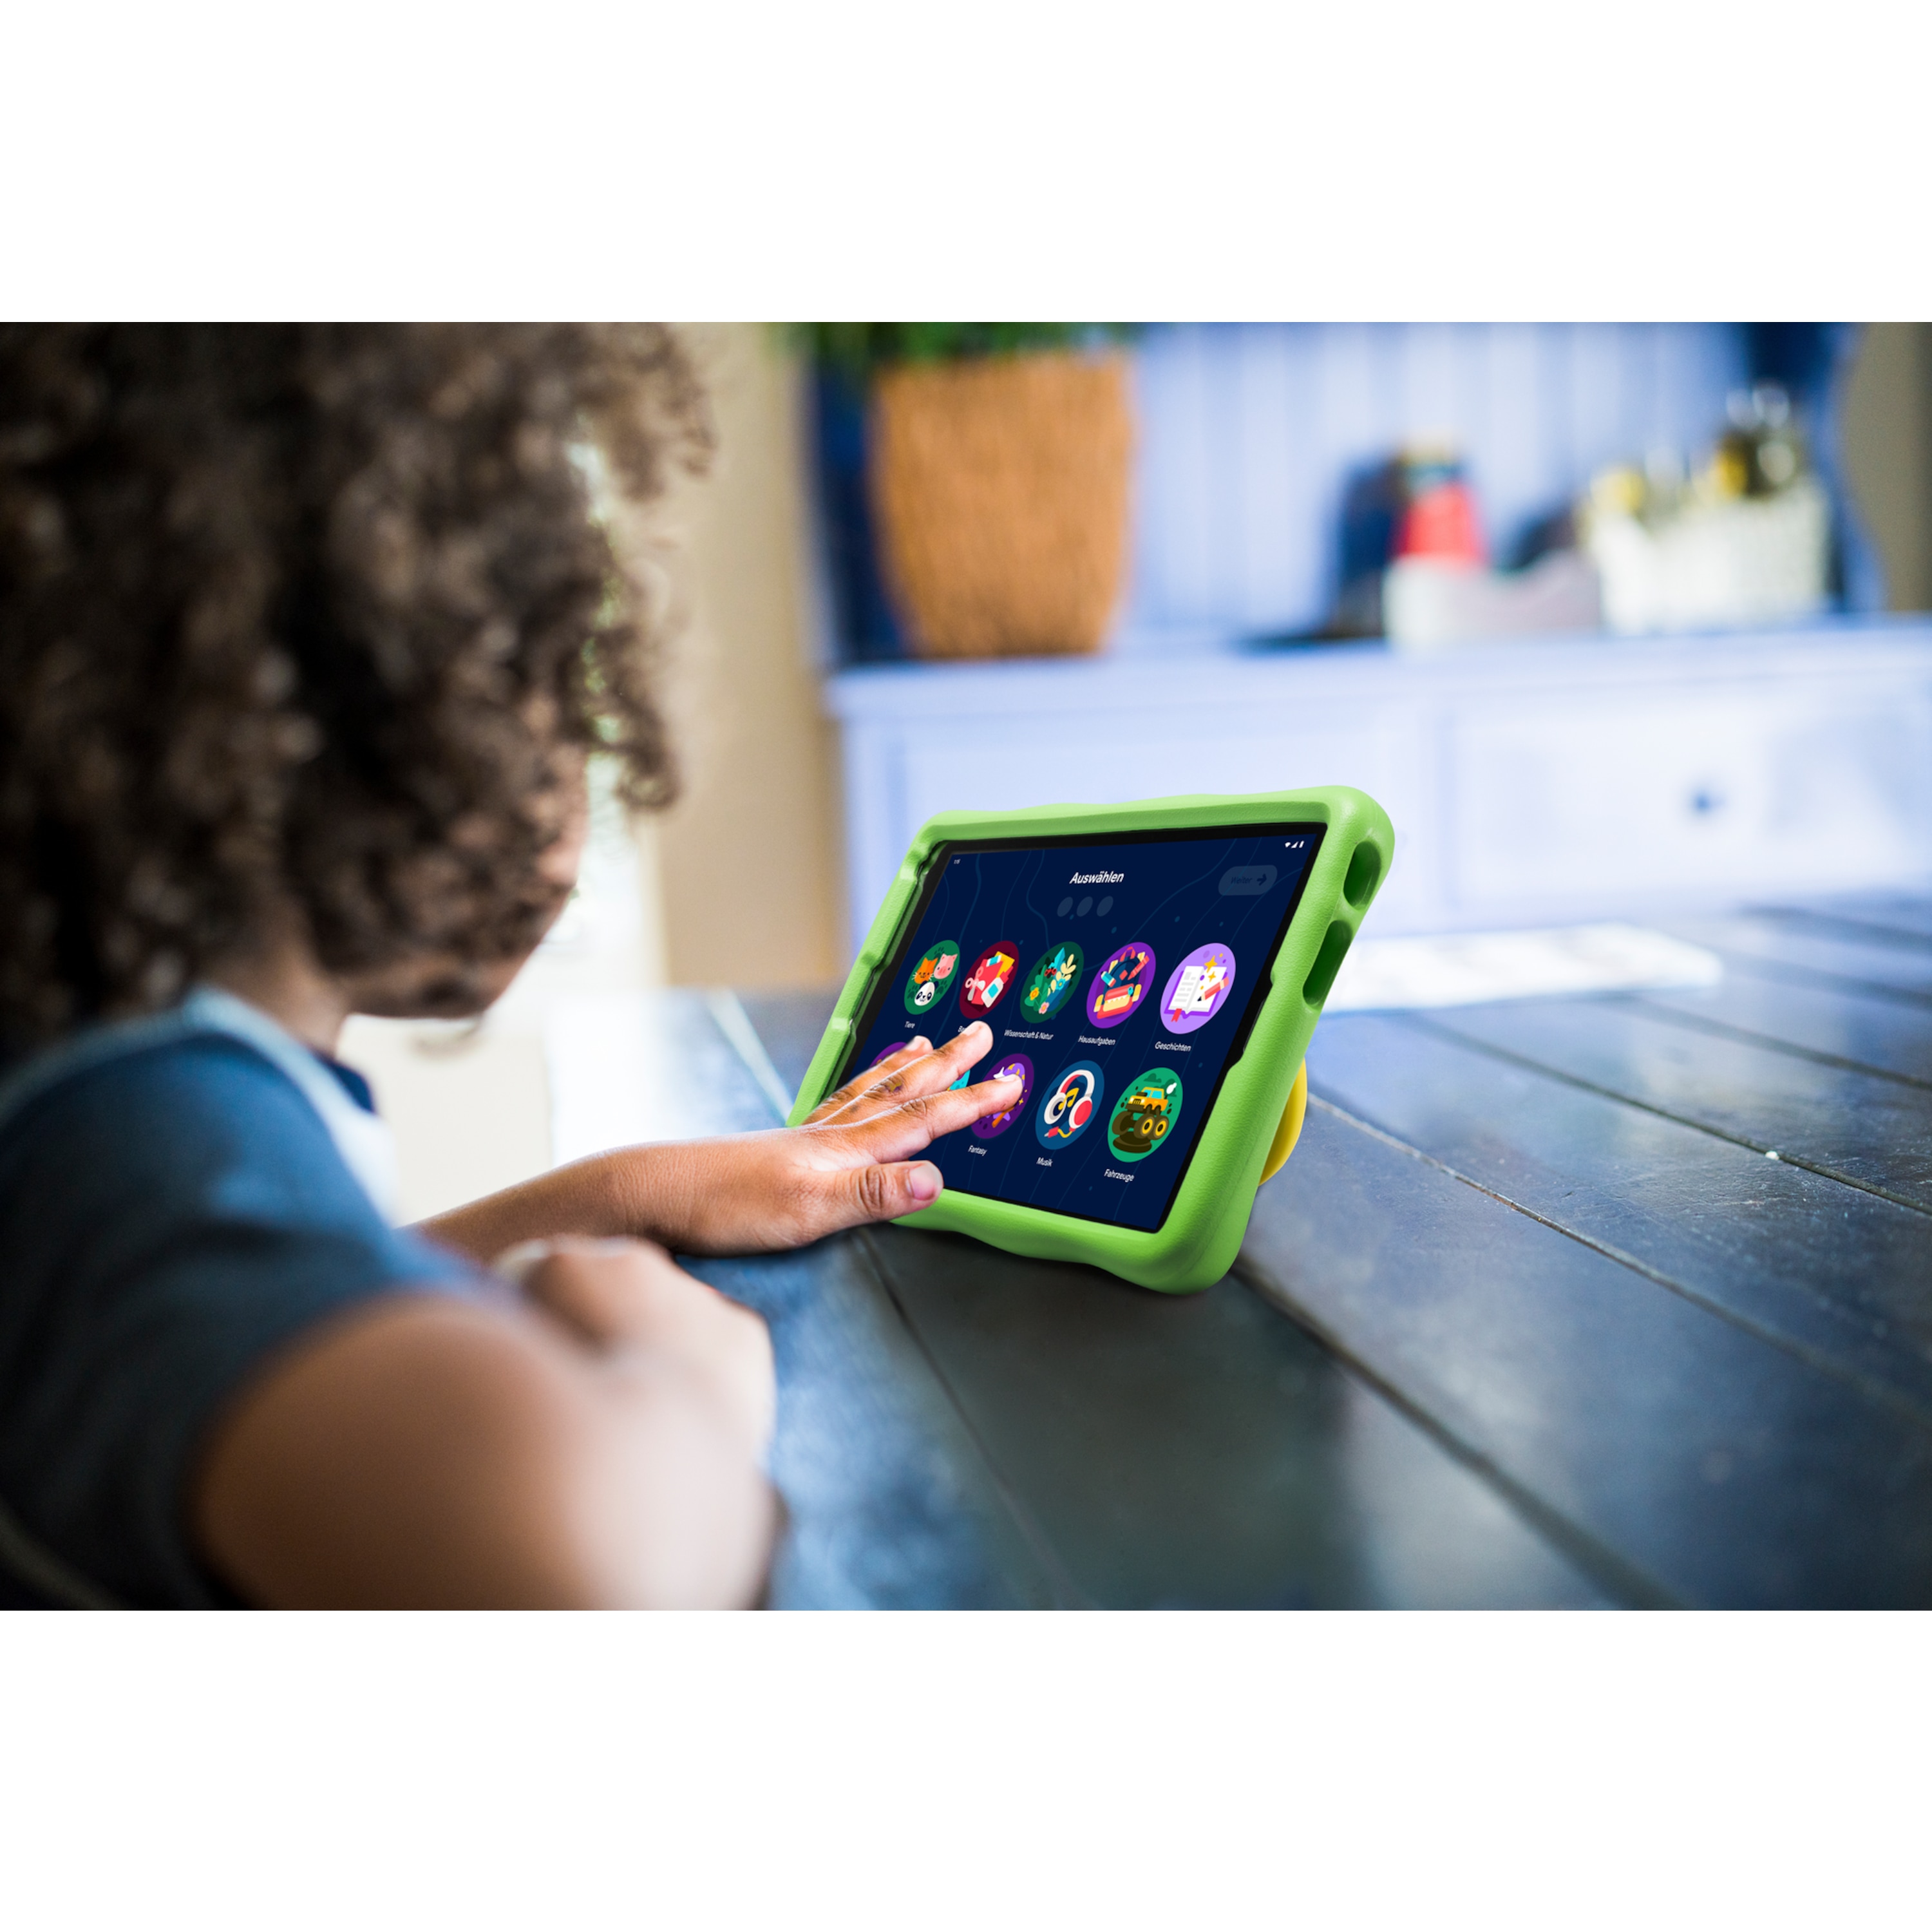 medion-lifetab-e10440-kids-tablet-aldi-talk